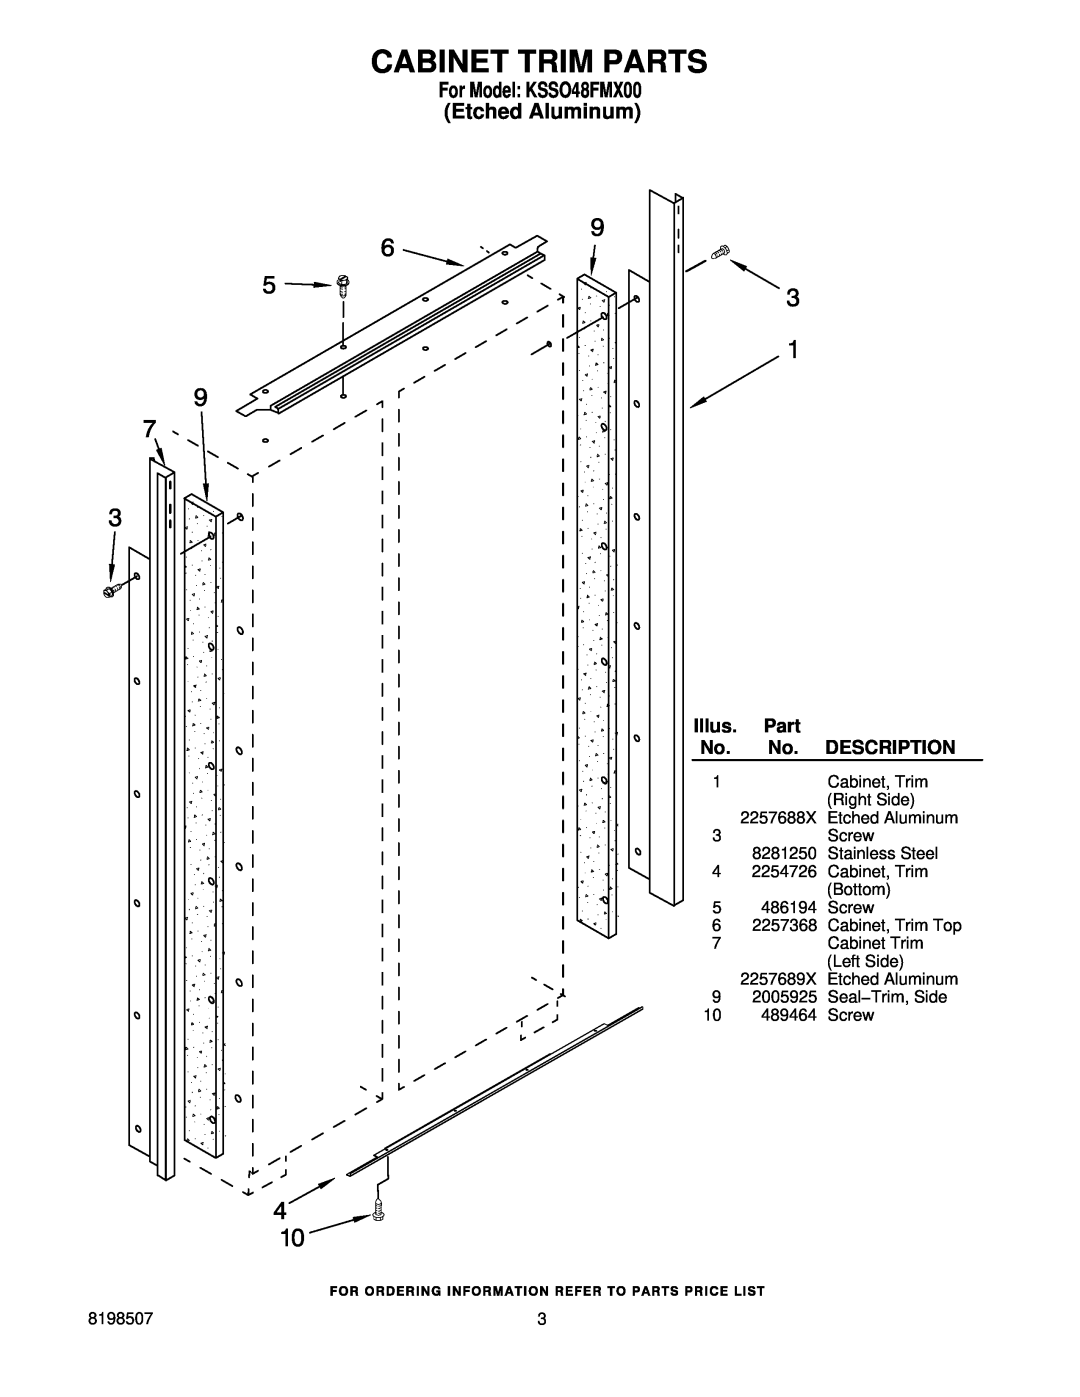 KitchenAid manual Cabinet Trim Parts, For Model KSSO48FMX00 Etched Aluminum, Illus, Description 